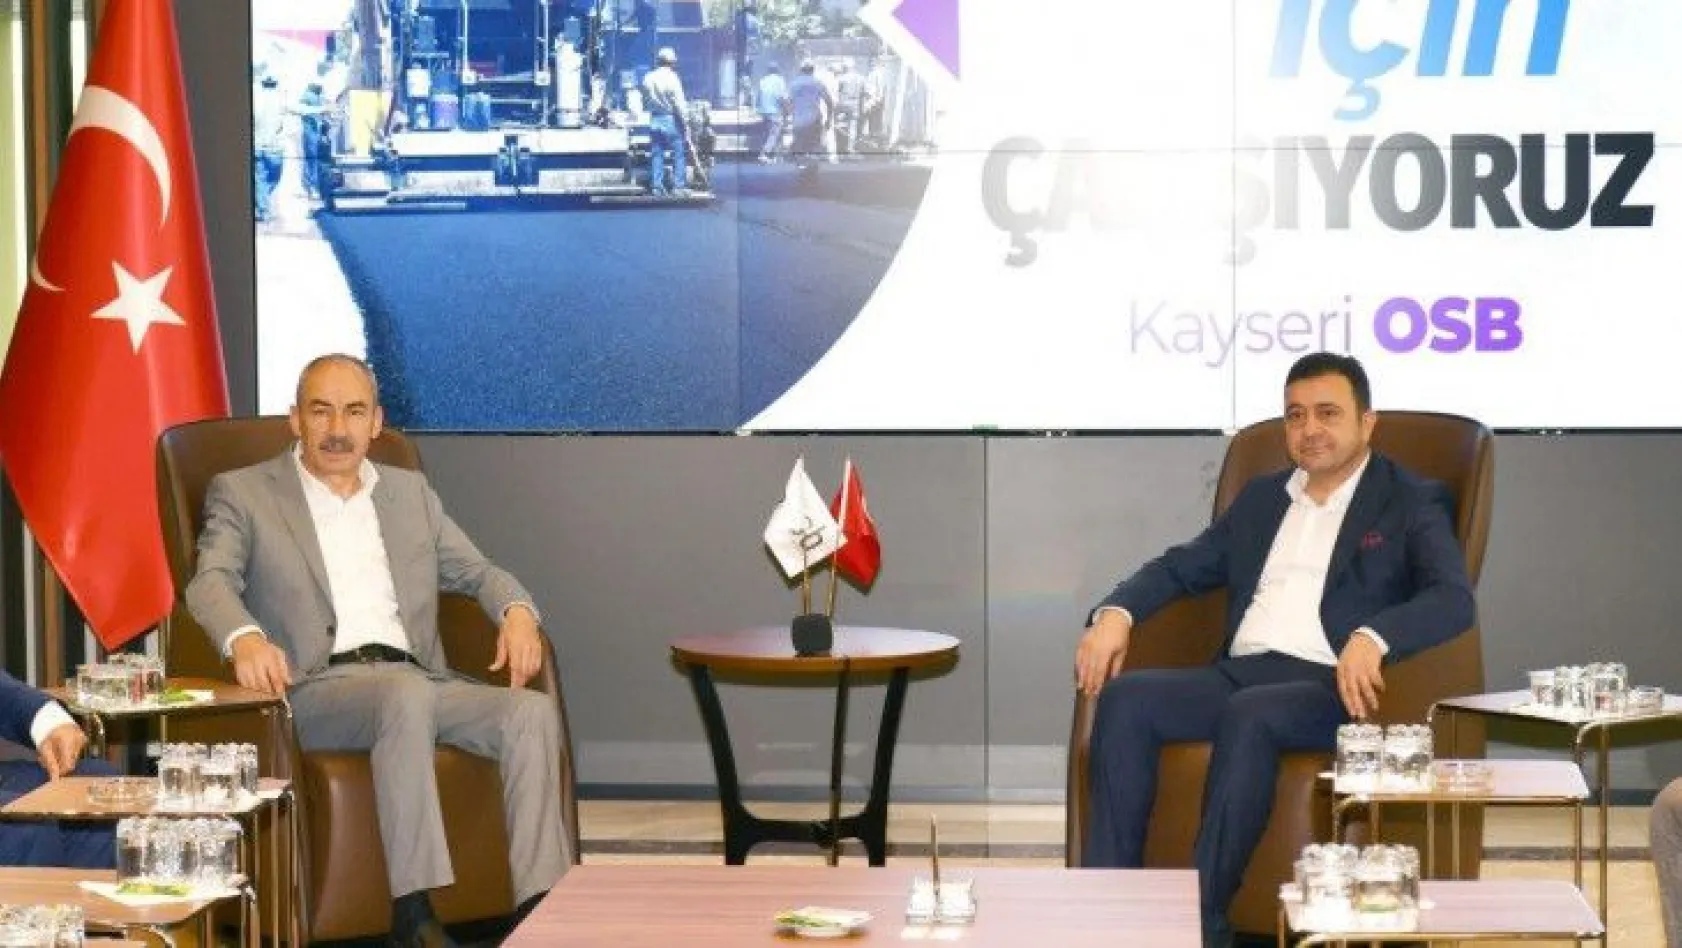 Ticaret Odası Başkanı Gülsoy: OSB, Kayseri'nin standartlarını yükseltiyor...